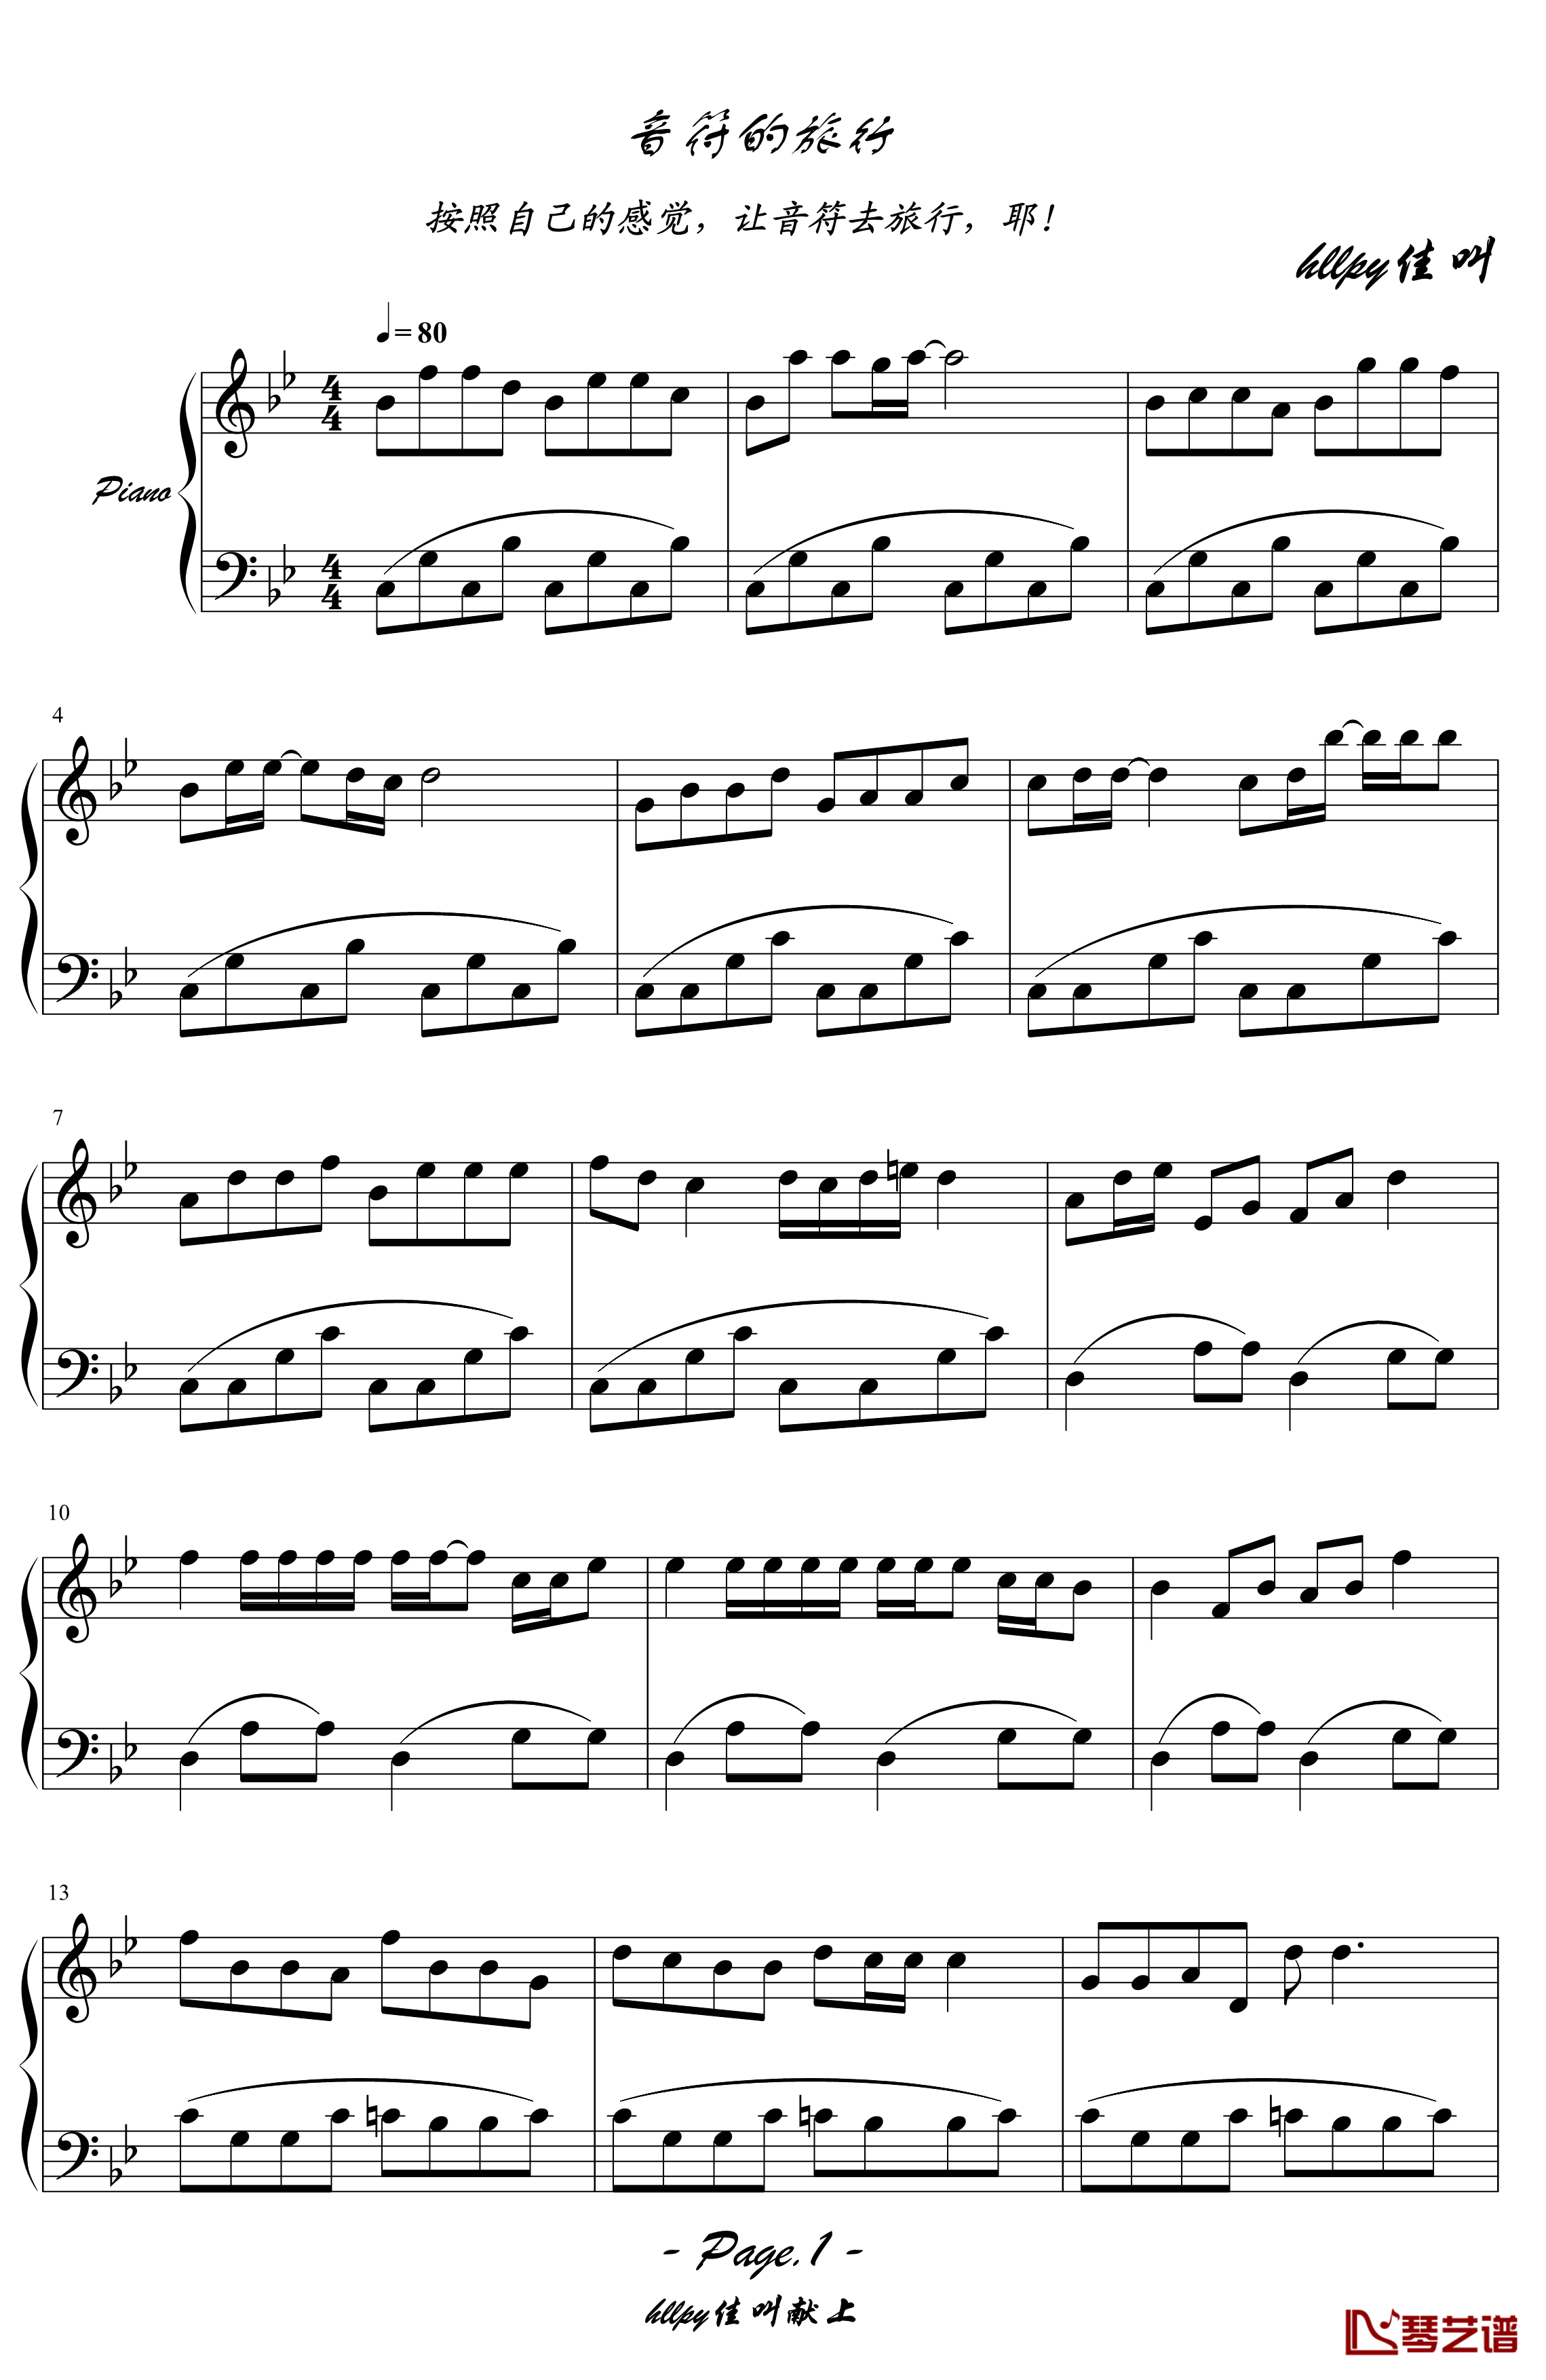 音符的旅行钢琴谱-hllpy3331